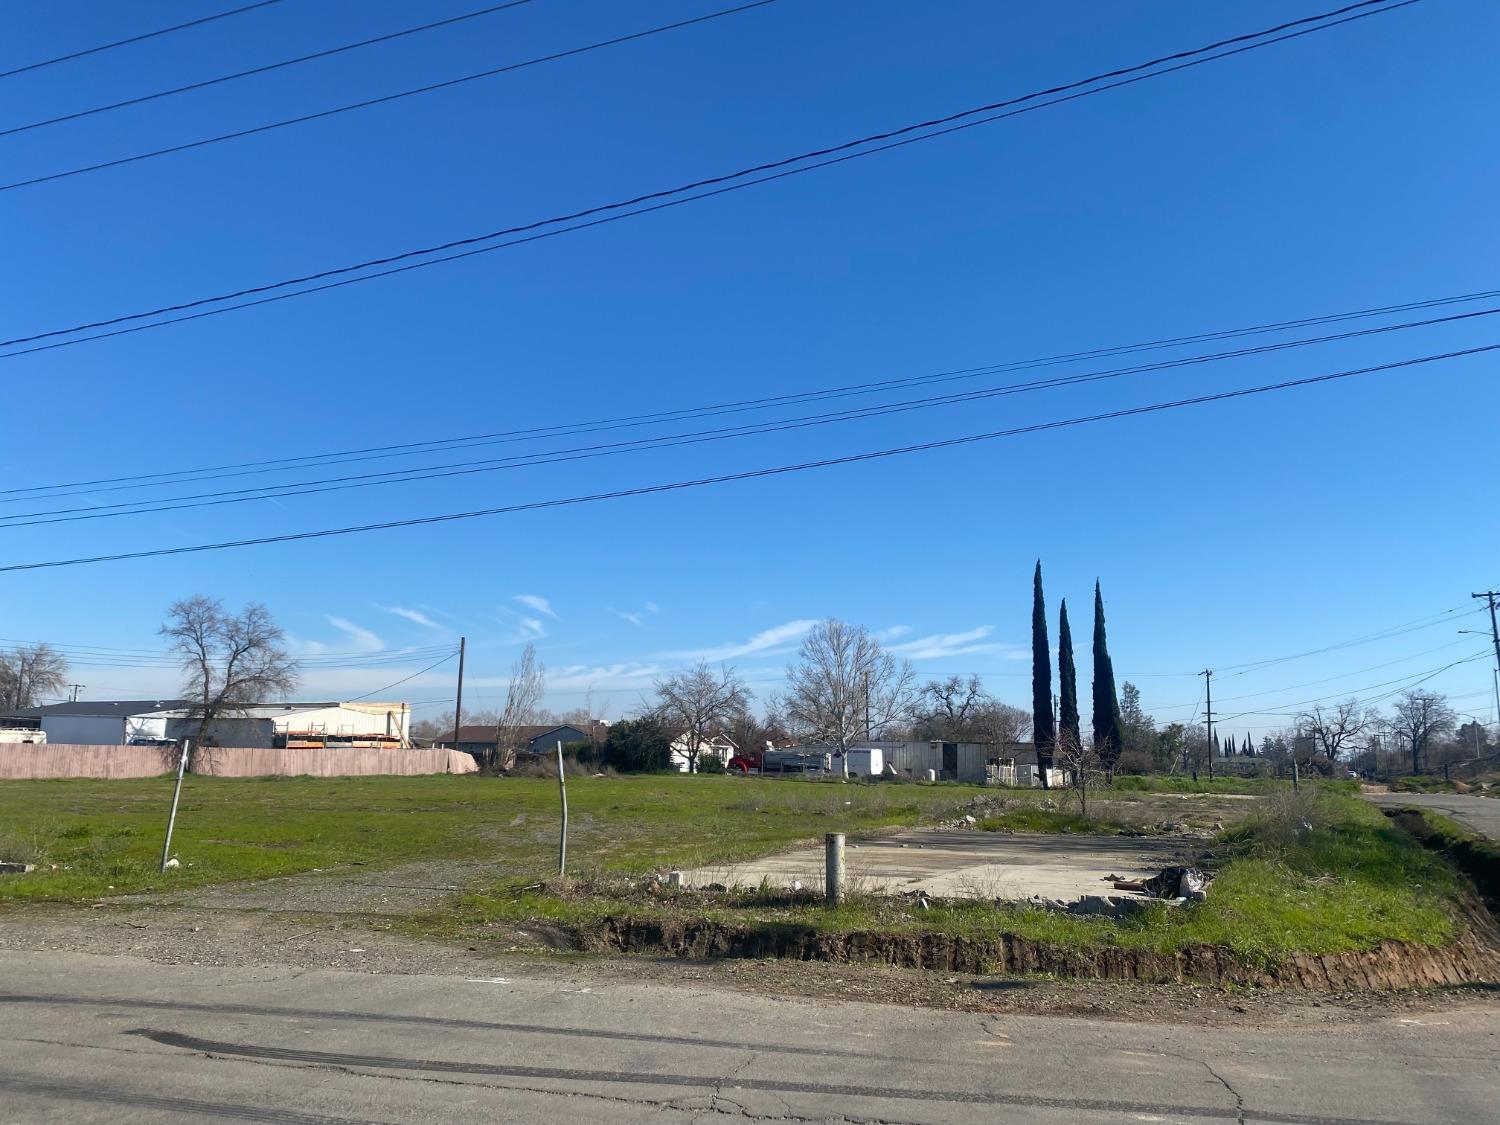 View Sacramento, CA 95838 property